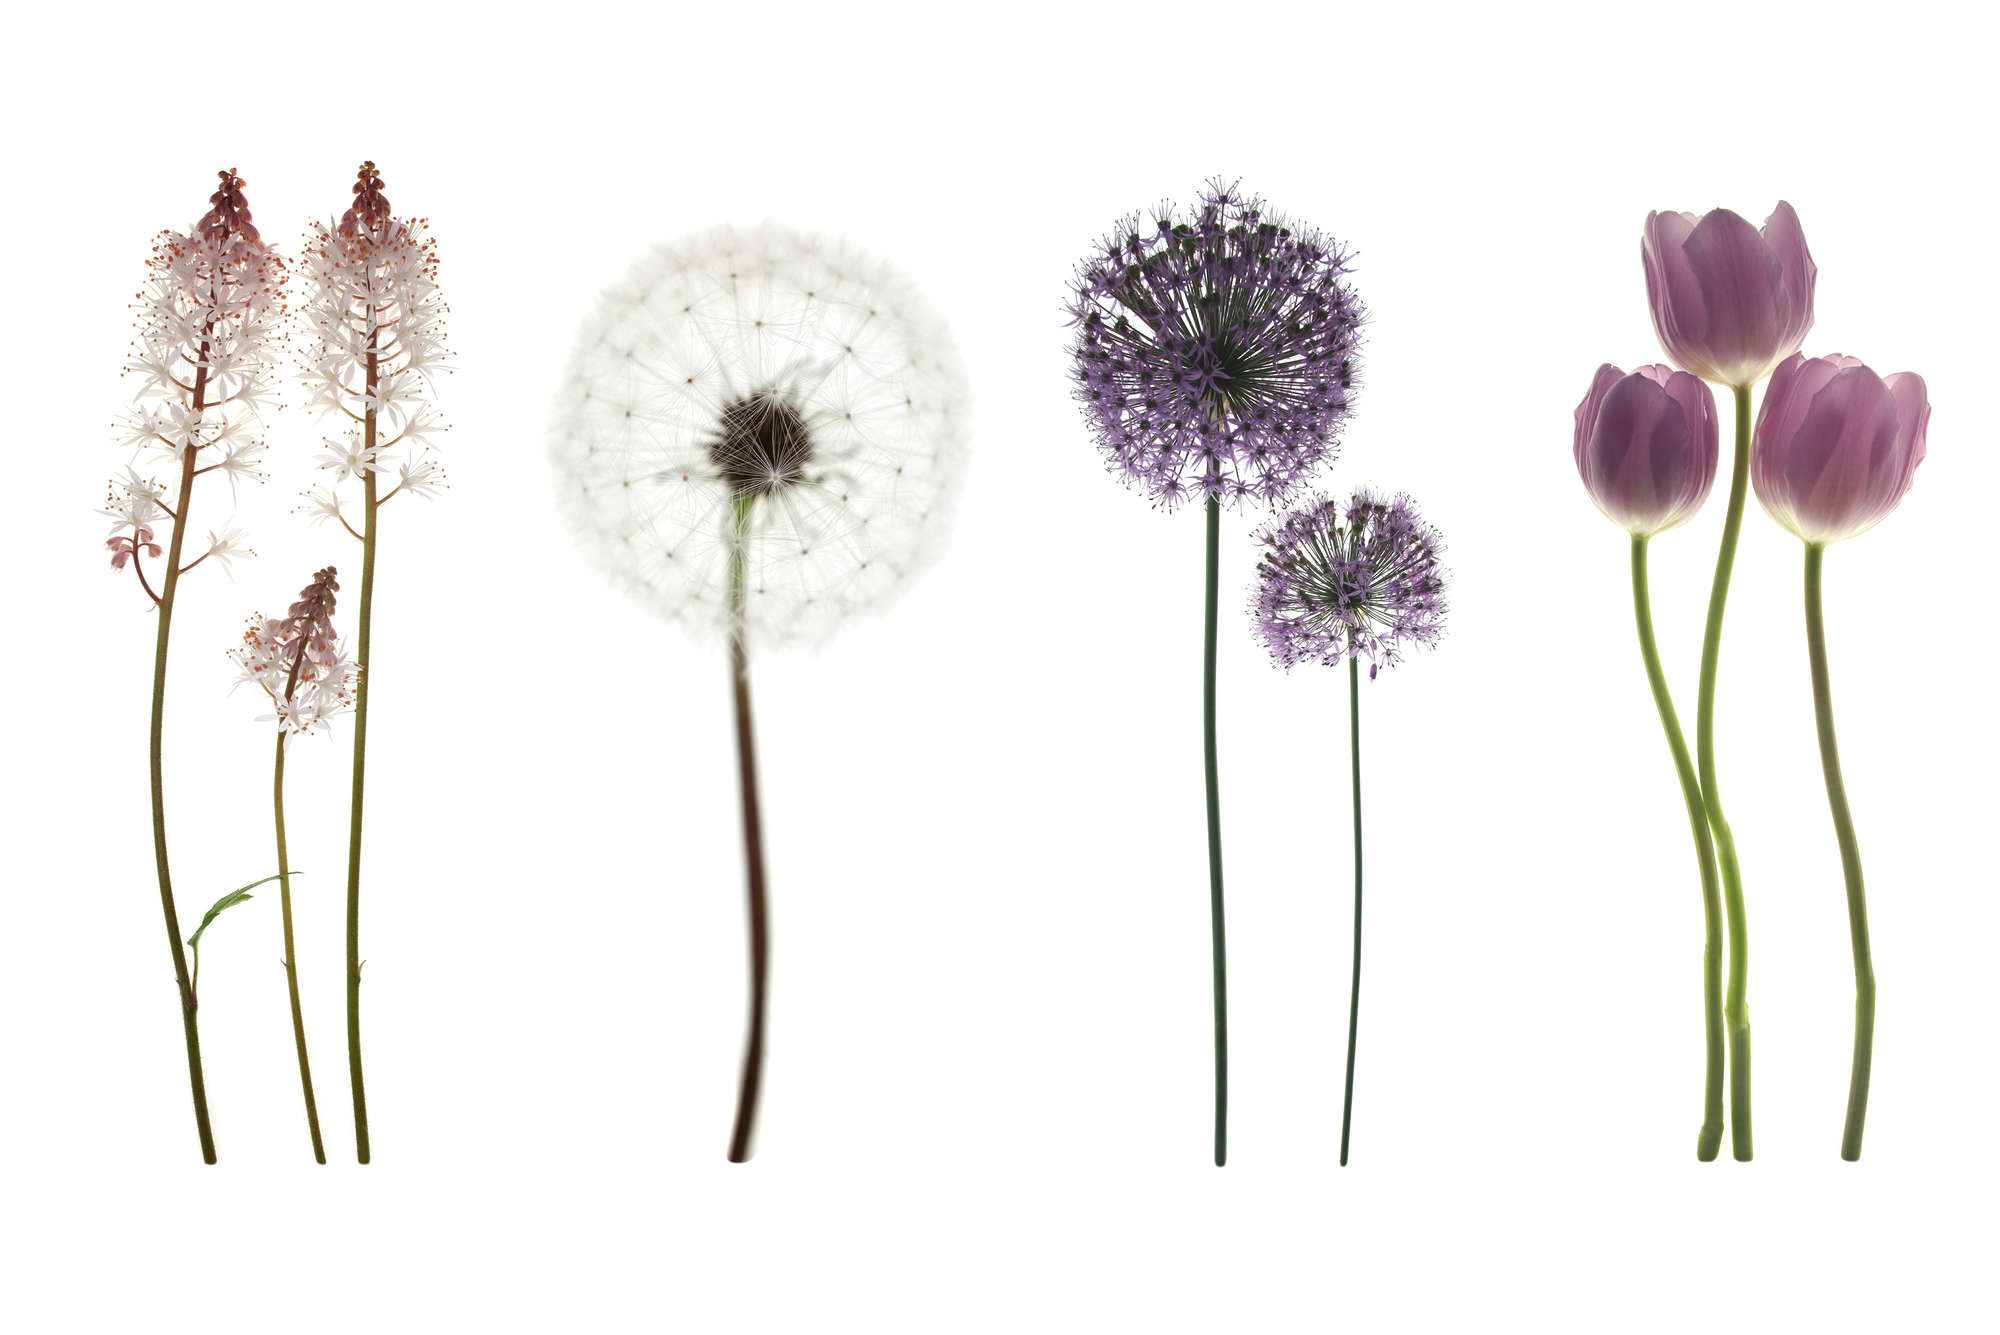             papiers peints à impression numérique avec diversité de fleurs - nacré intissé lisse
        